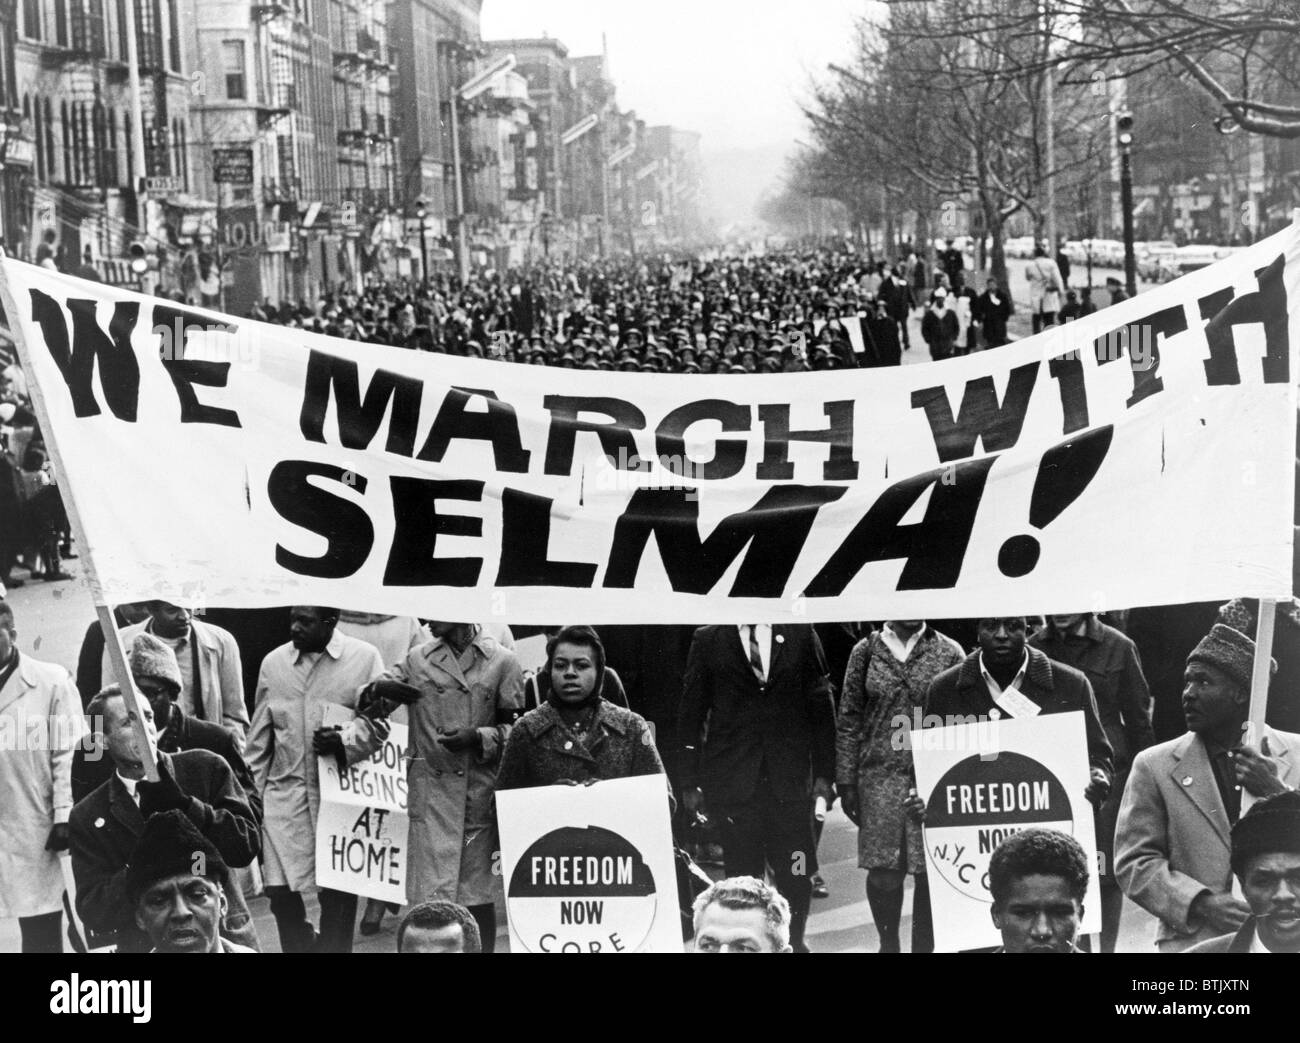 Bürgerrechte, banner Demonstranten tragen "Wir marschieren mit Selma!" Straße in Harlem, New York City. Foto von Stanley Wolfson, 1965 Stockfoto